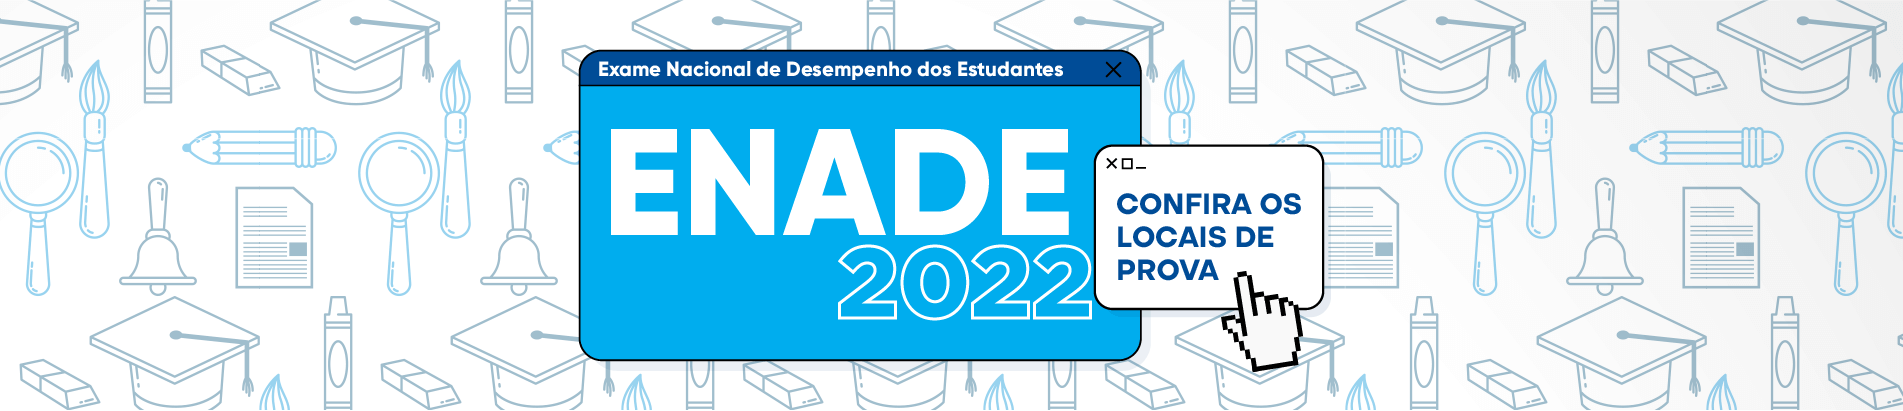 Banner ENADE 2022 confira os locais de prova DESKTOP